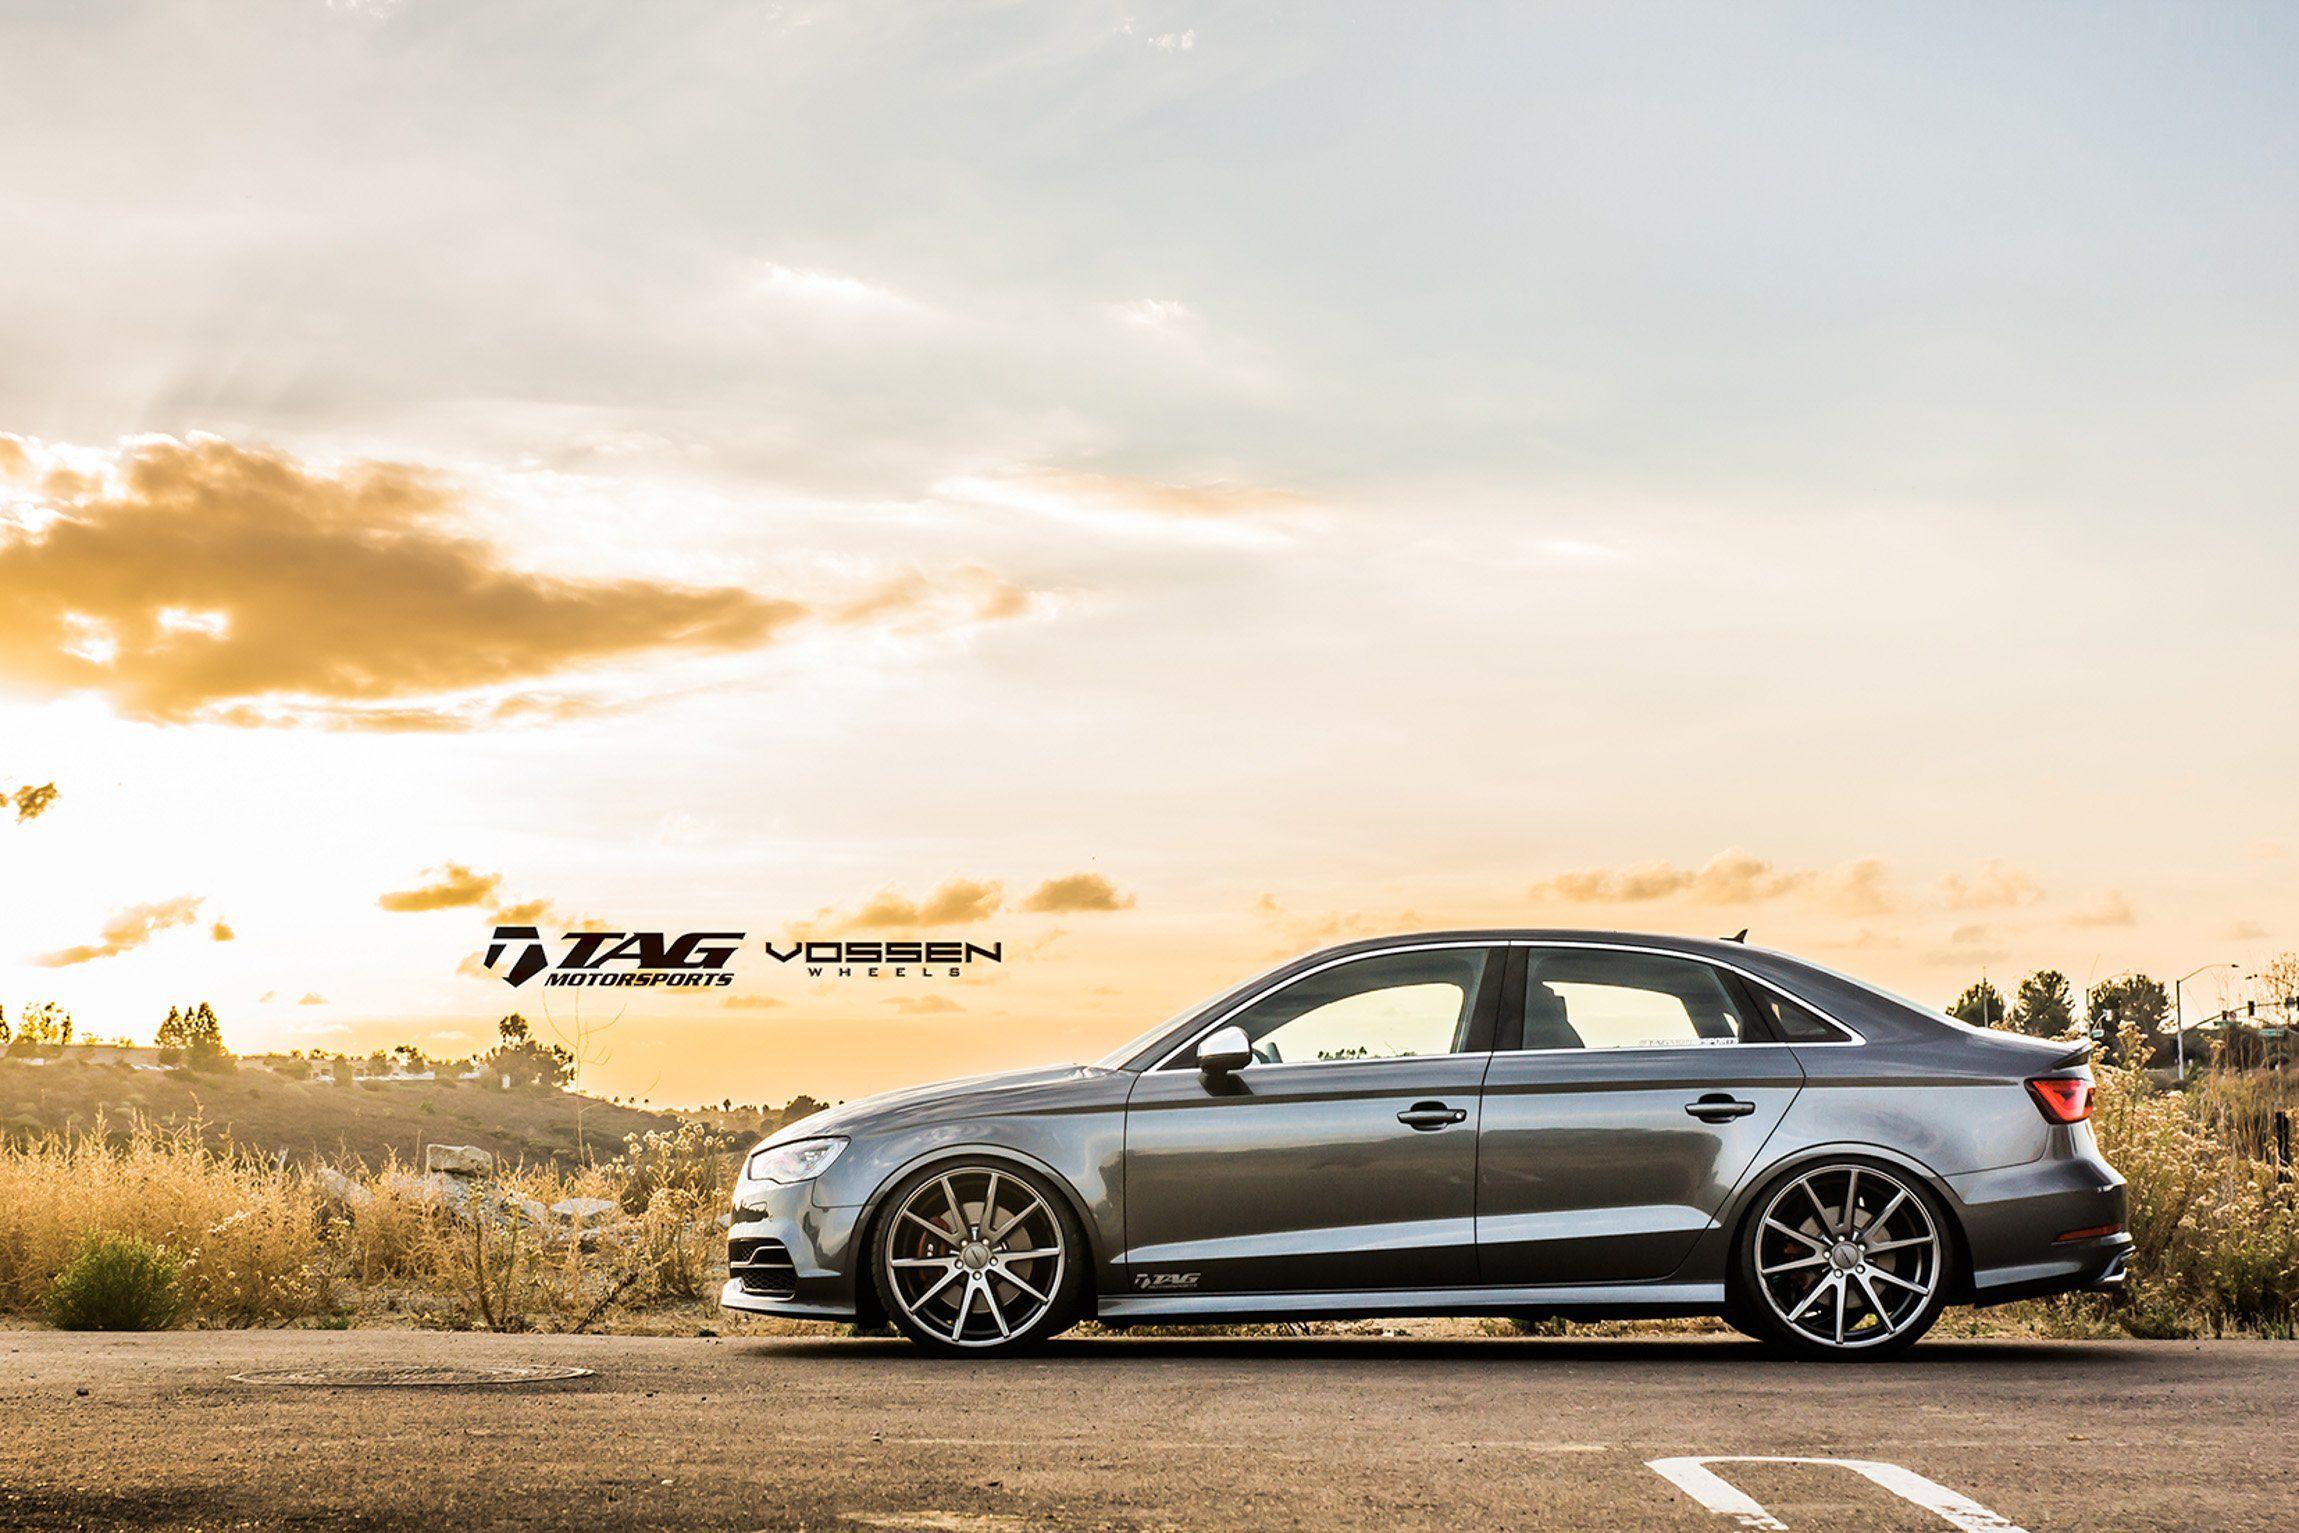 Audi Rs3 Sedan Wallpapers